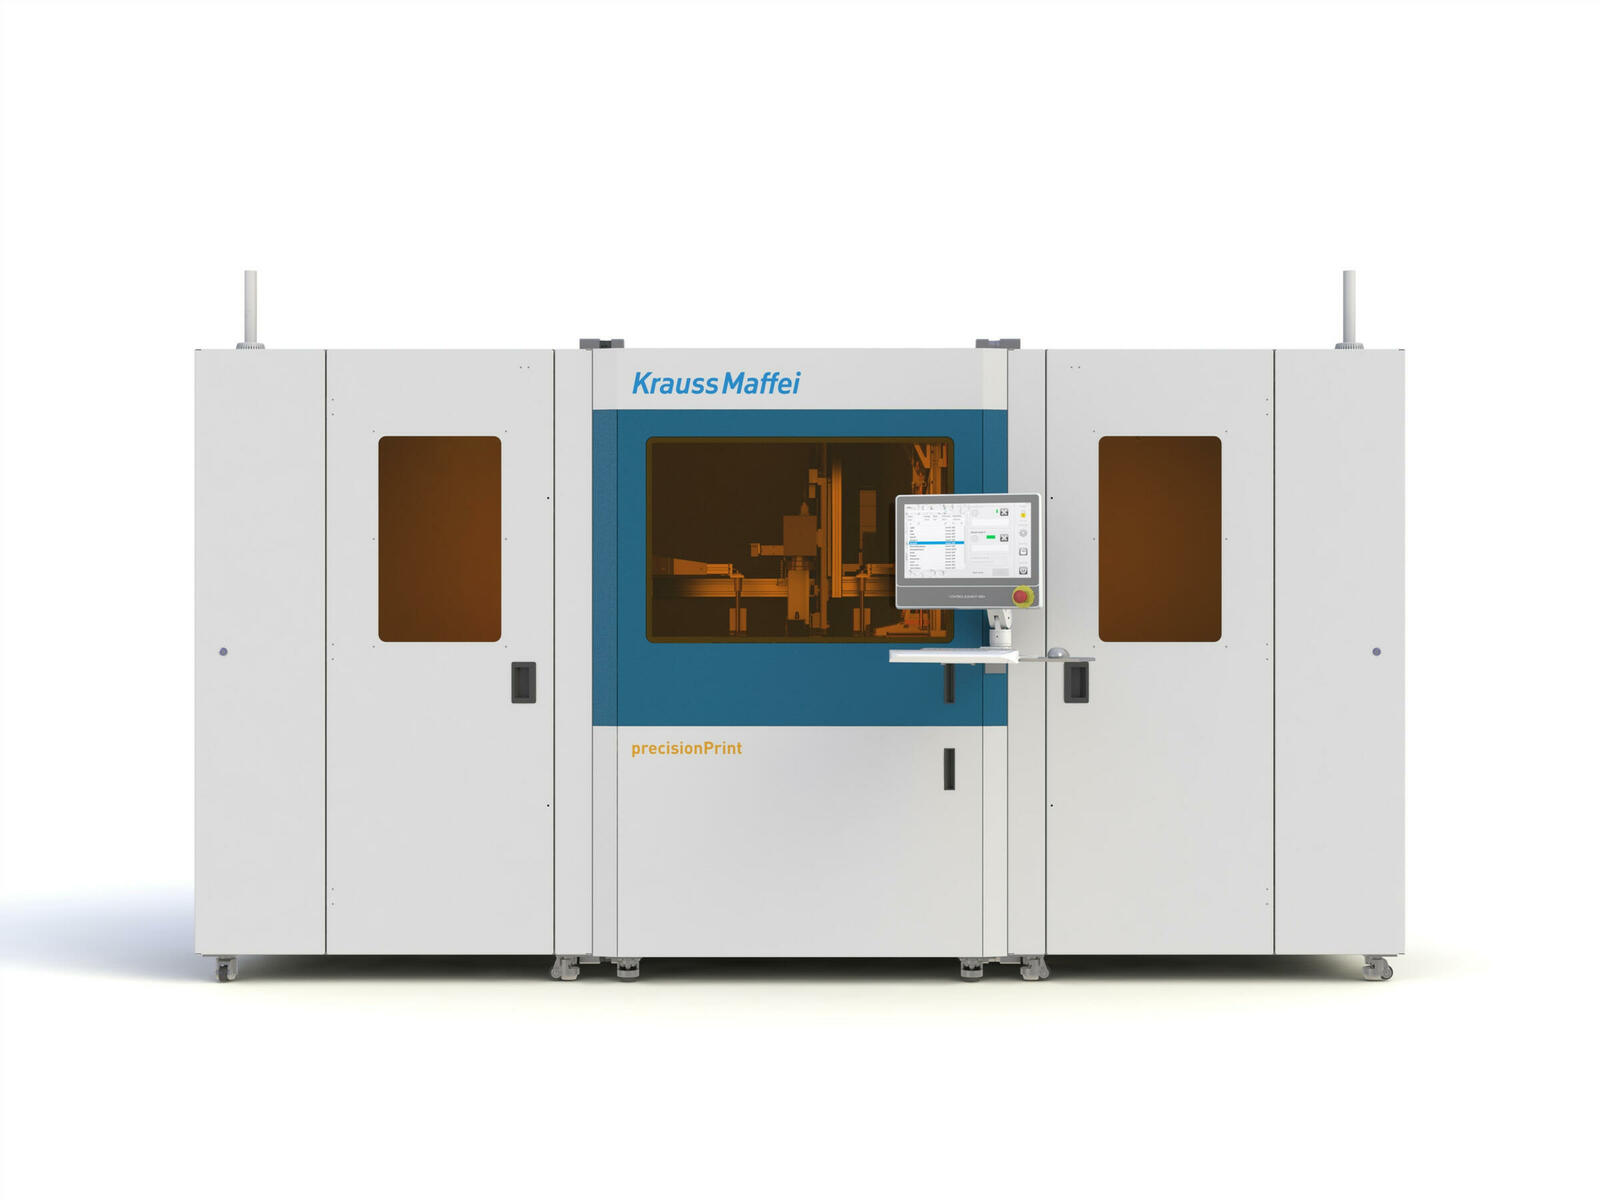 Der hochautomatisierte Precisionprint ist eine leistungsfähige Stereolithographie-Lösung und produziert kosteneffizient Bauteile mit höchsten Anforderungen an Oberflächenqualität und Detailauflösung im industriellen Maßstab.